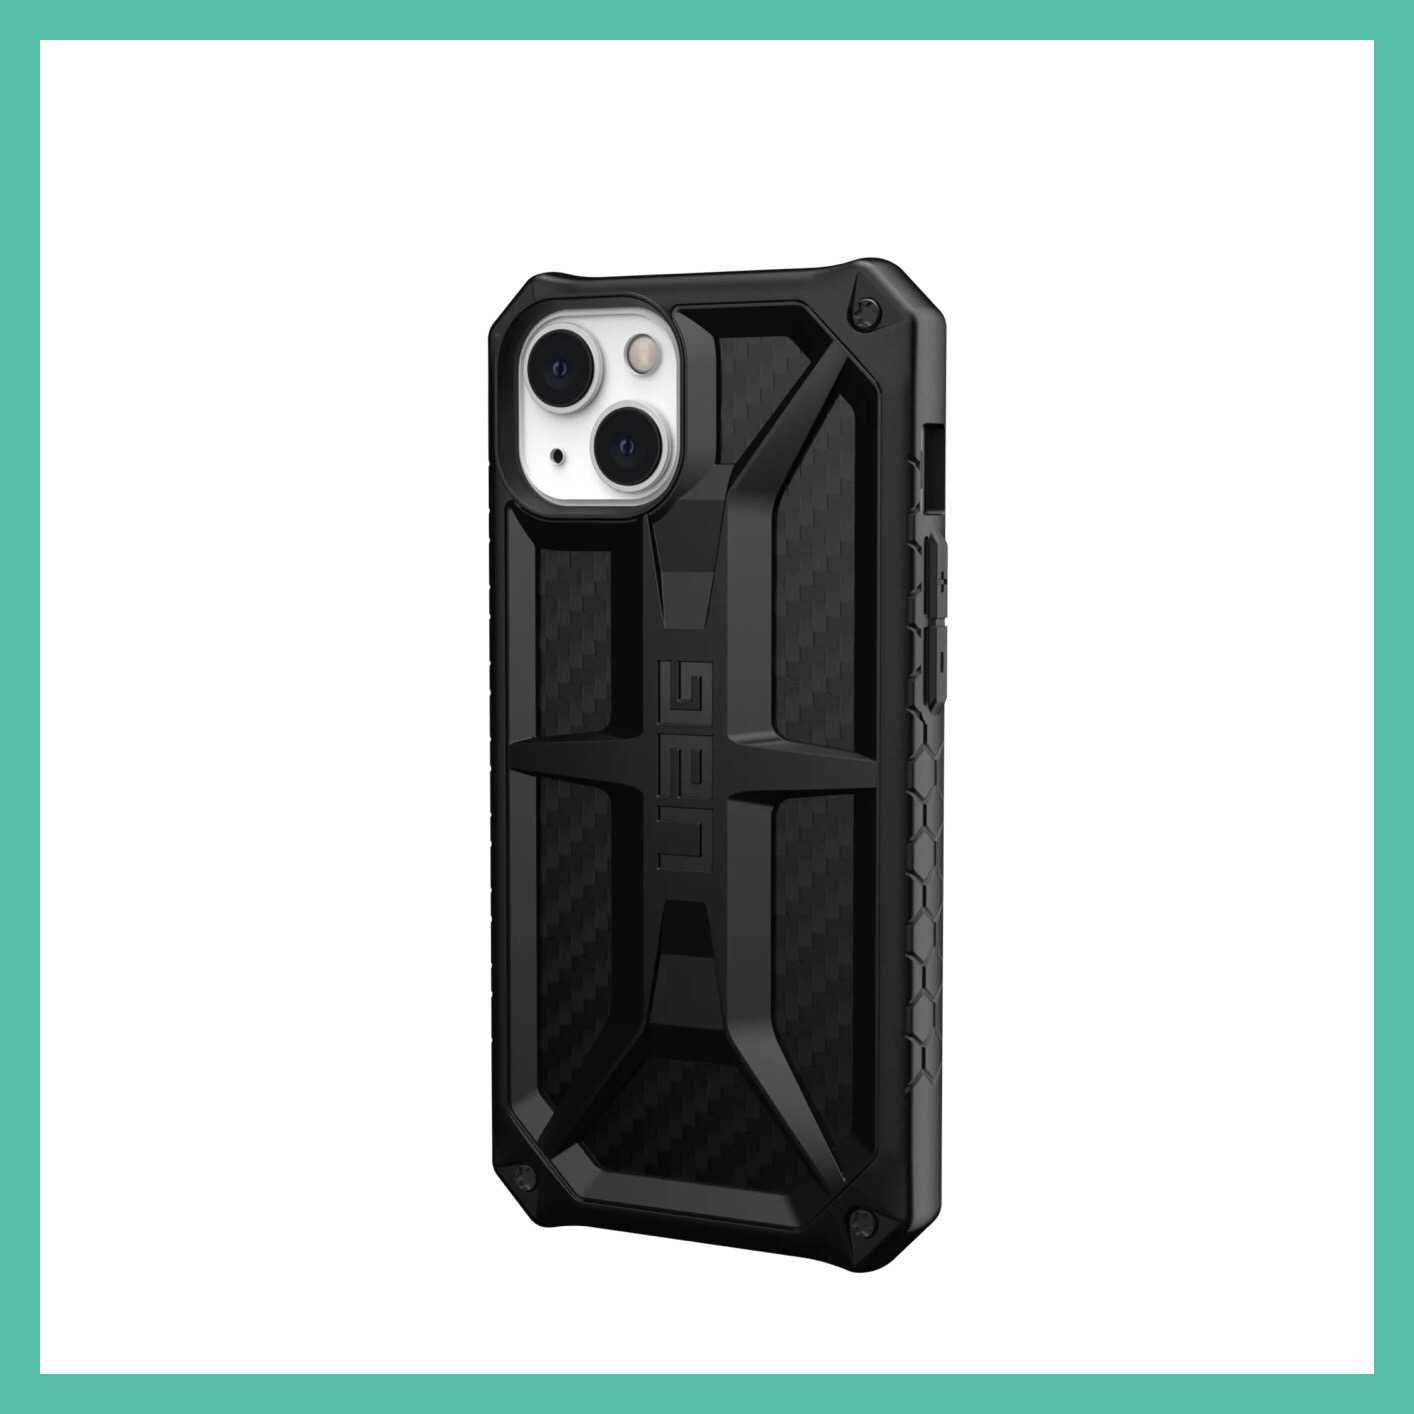 強強滾- (現貨)美國軍規 UAG iPhone13 "6.1" (2021) 頂級版耐衝擊保護殼 (5色)